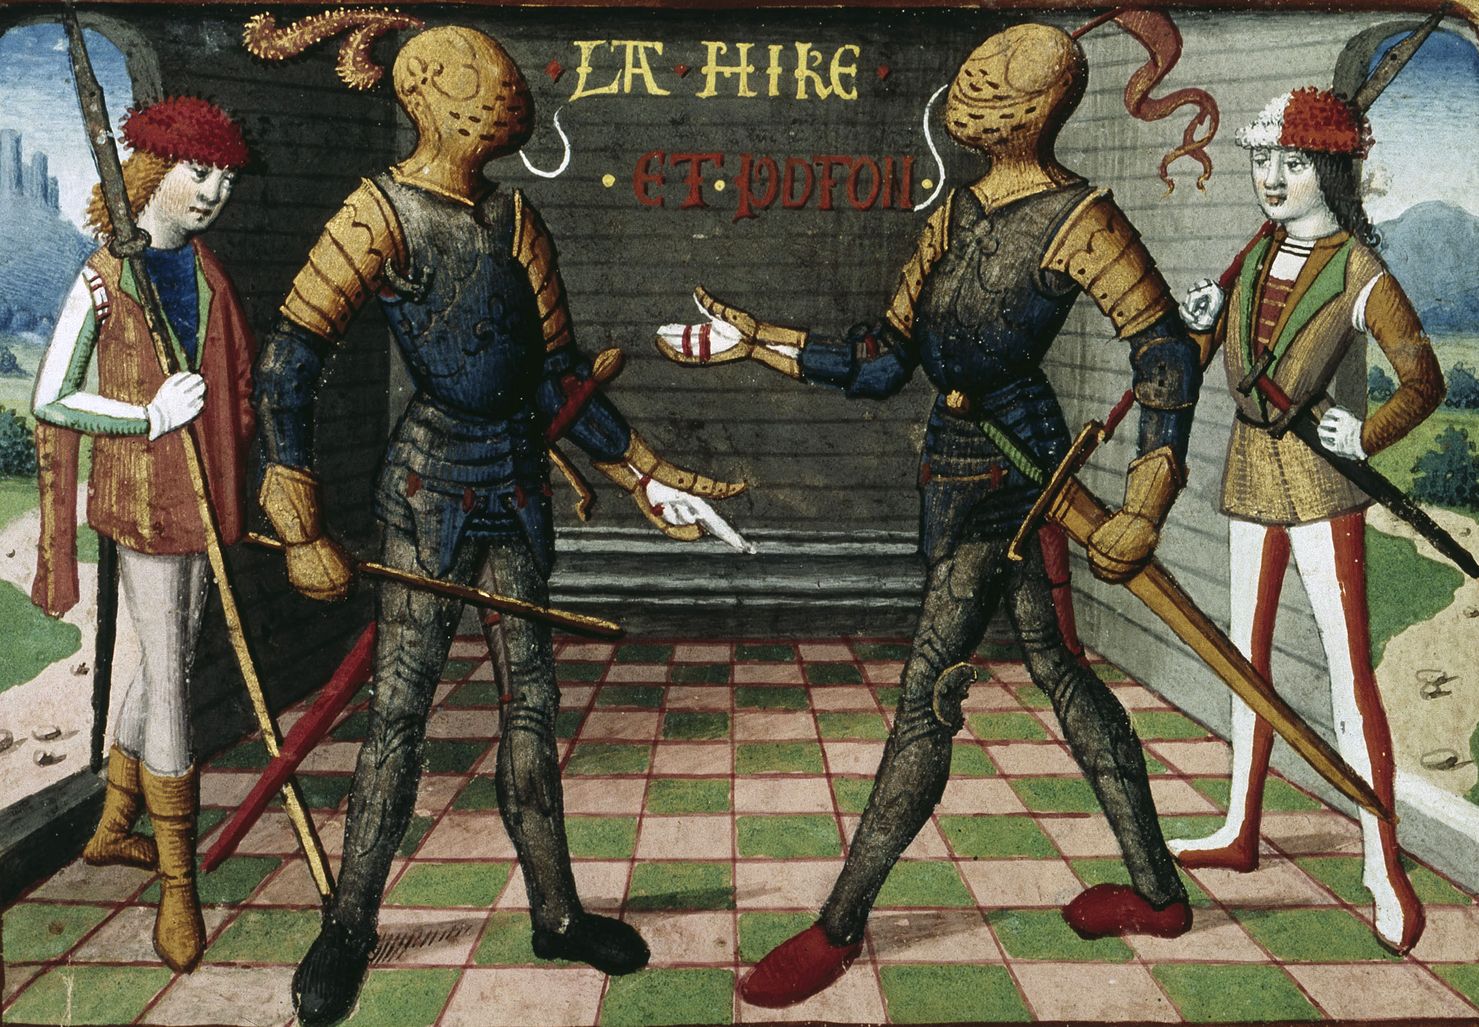 Etienne de Vignolles (La Hire), left, and Jean Poton de Xaintrailles served under Joan.